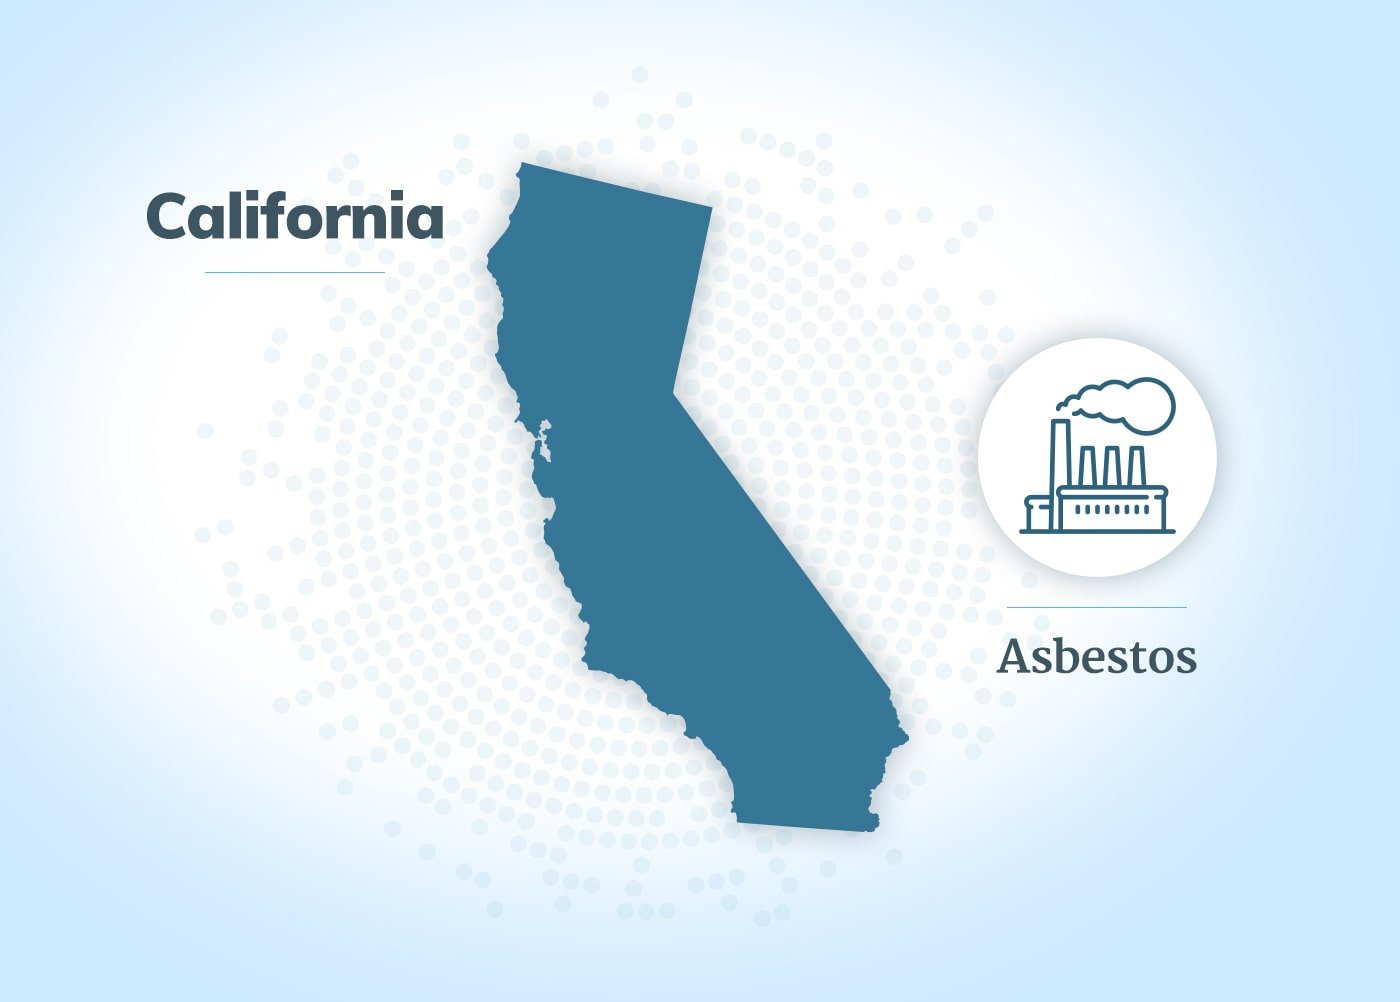 Asbestos exposure in California